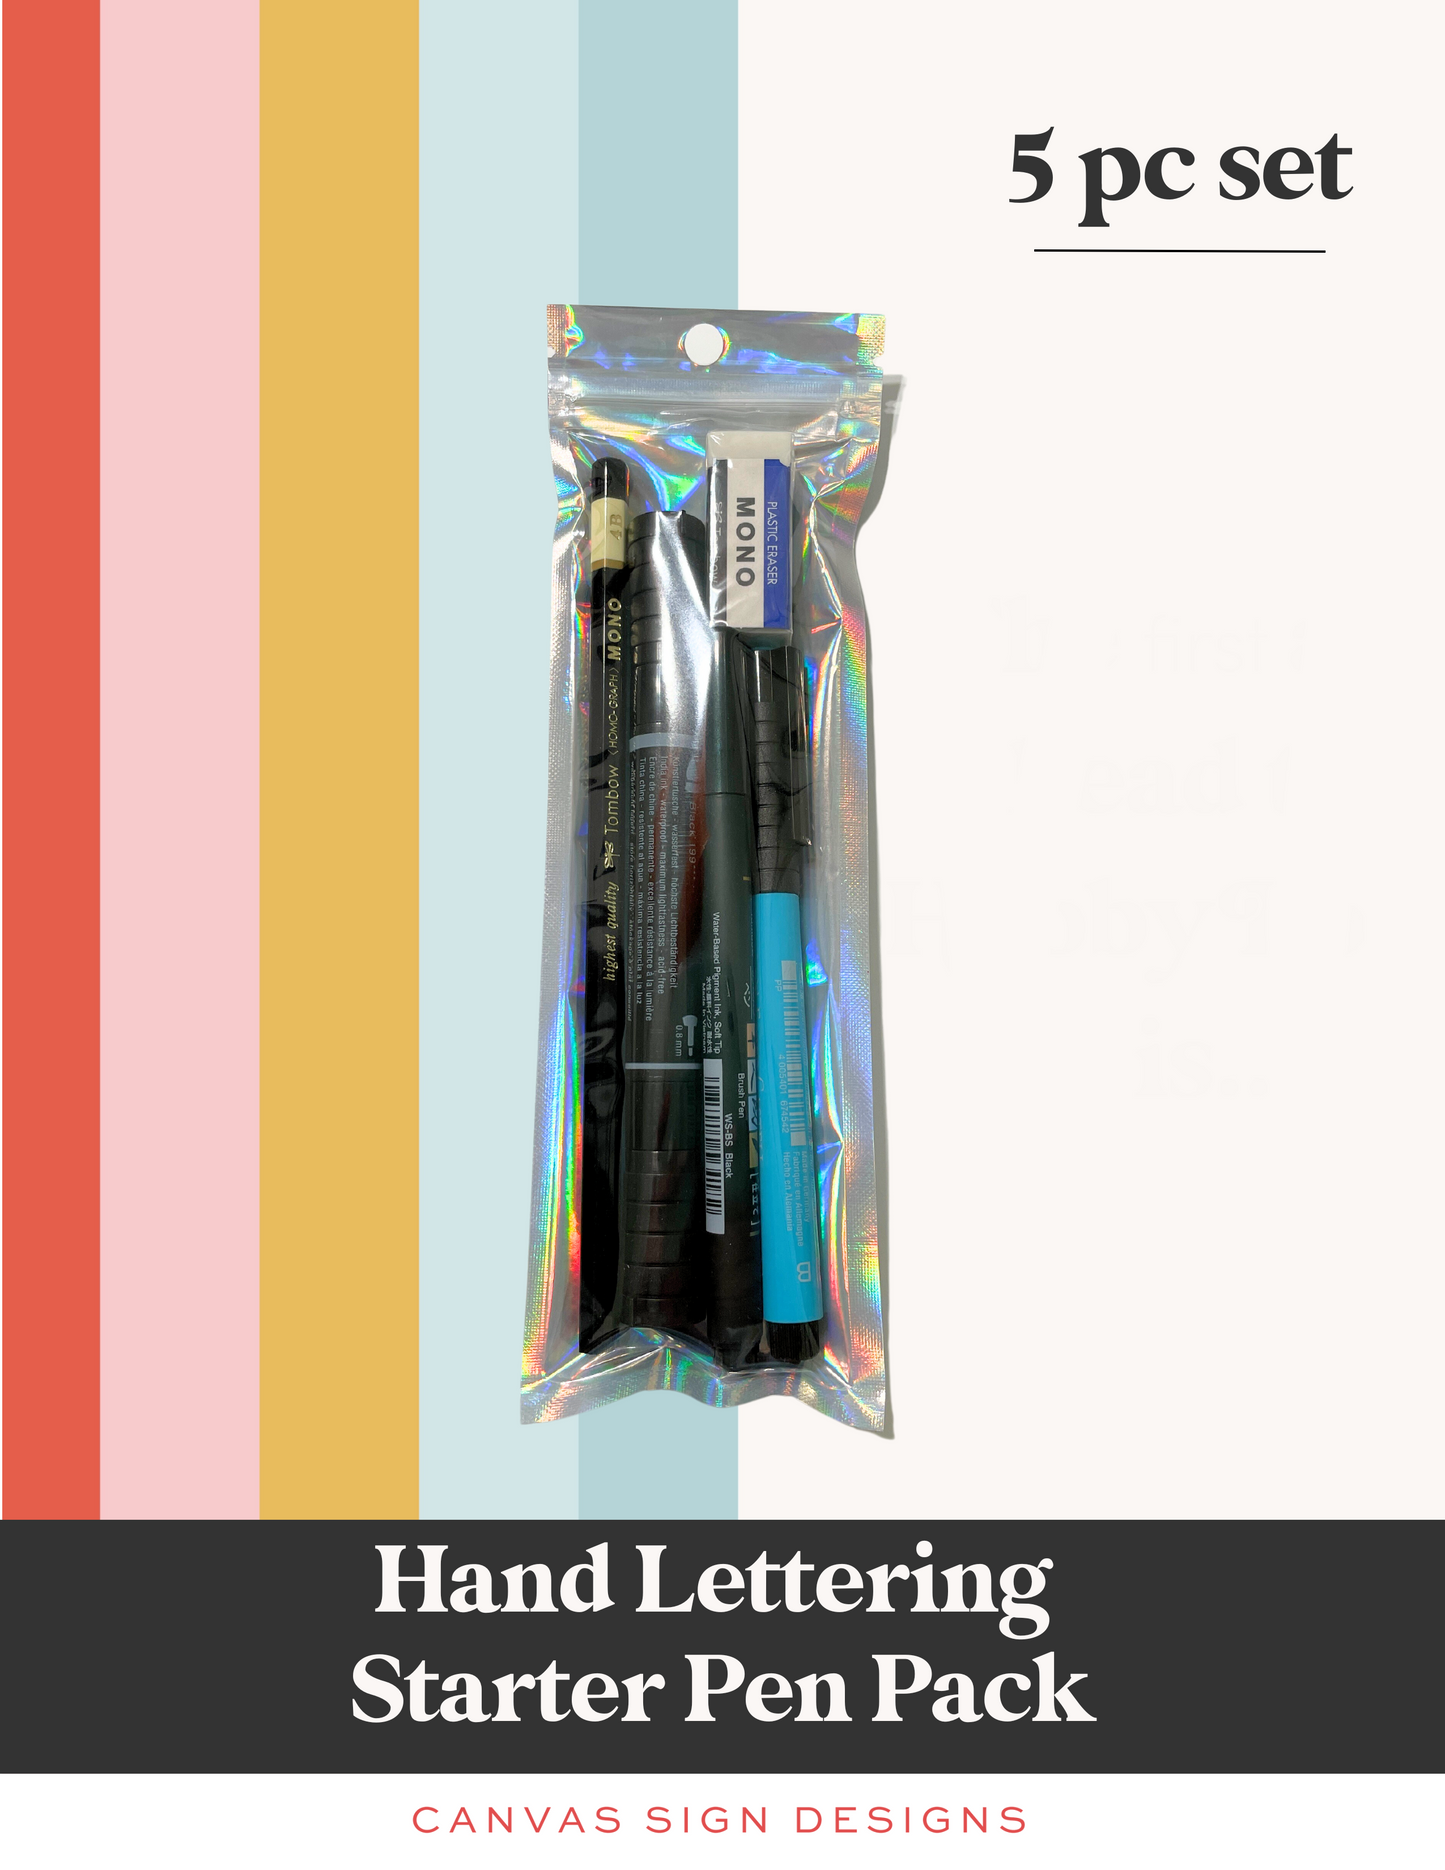 Hand Lettering Starter Pen Pack - 5 pc Set